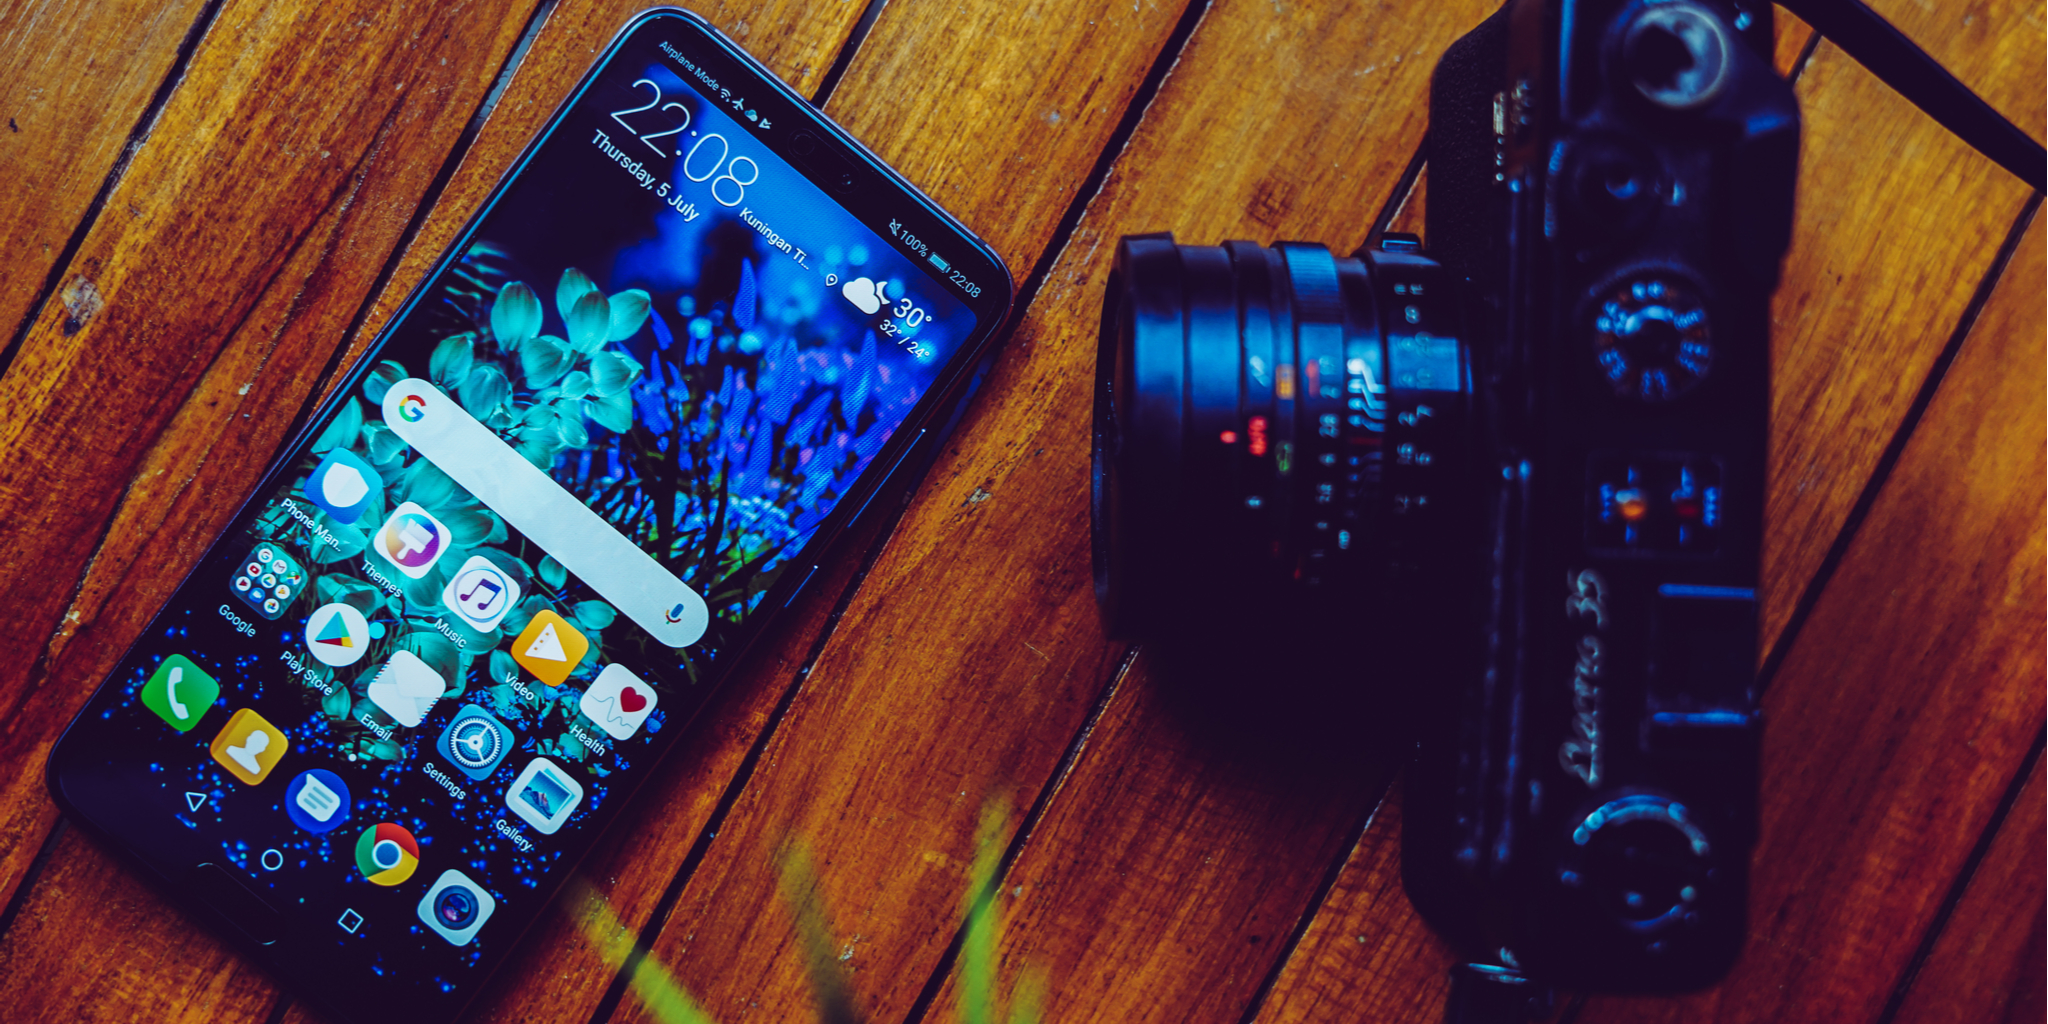 Google Pixel 3 vs Huawei P20 Pro: Welches kameraorientierte Smartphone ist das Richtige für Sie?